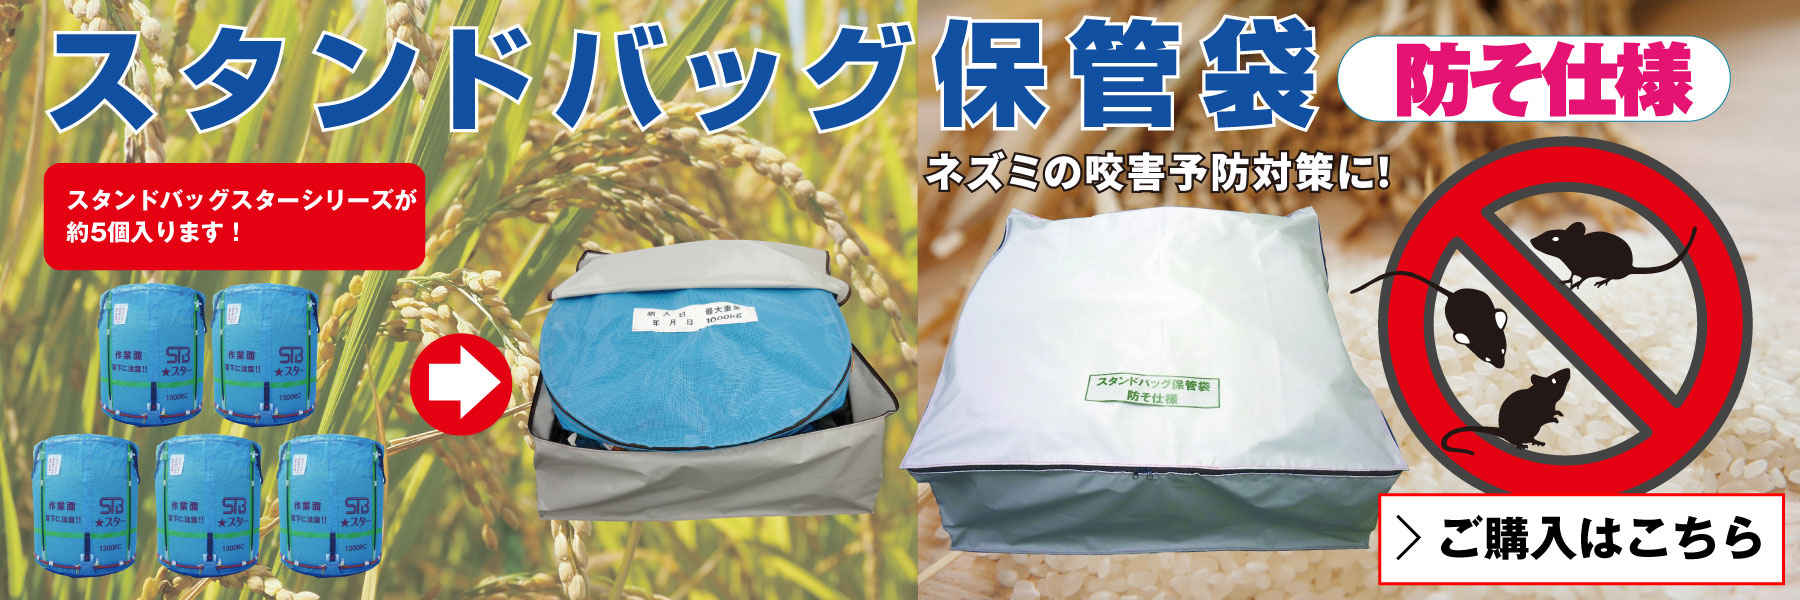 3年保証』 田中産業 籾殻収納袋 ヌカロンDX 一般型 両把手付